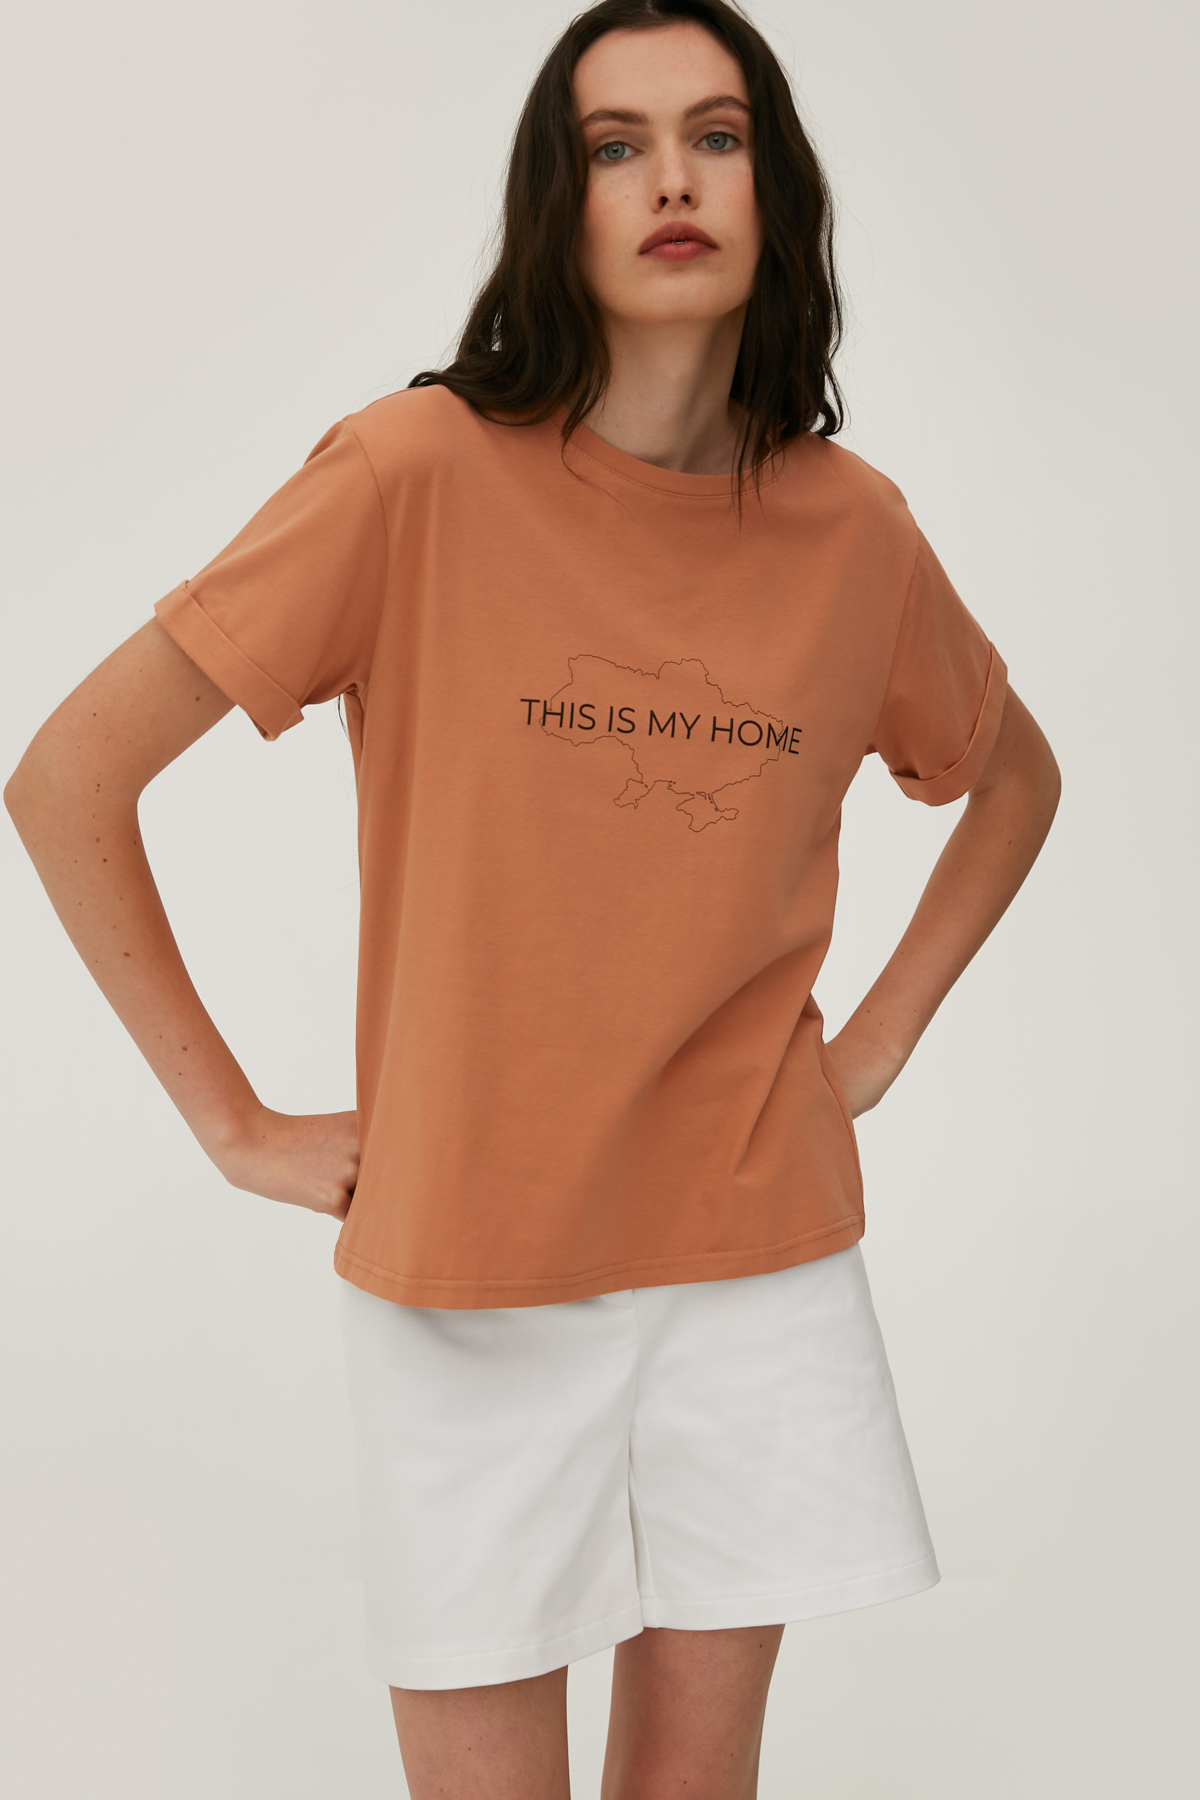 Карамельная футболка с надписью "This is my home" с широким удлиненным рукавом, фото 1